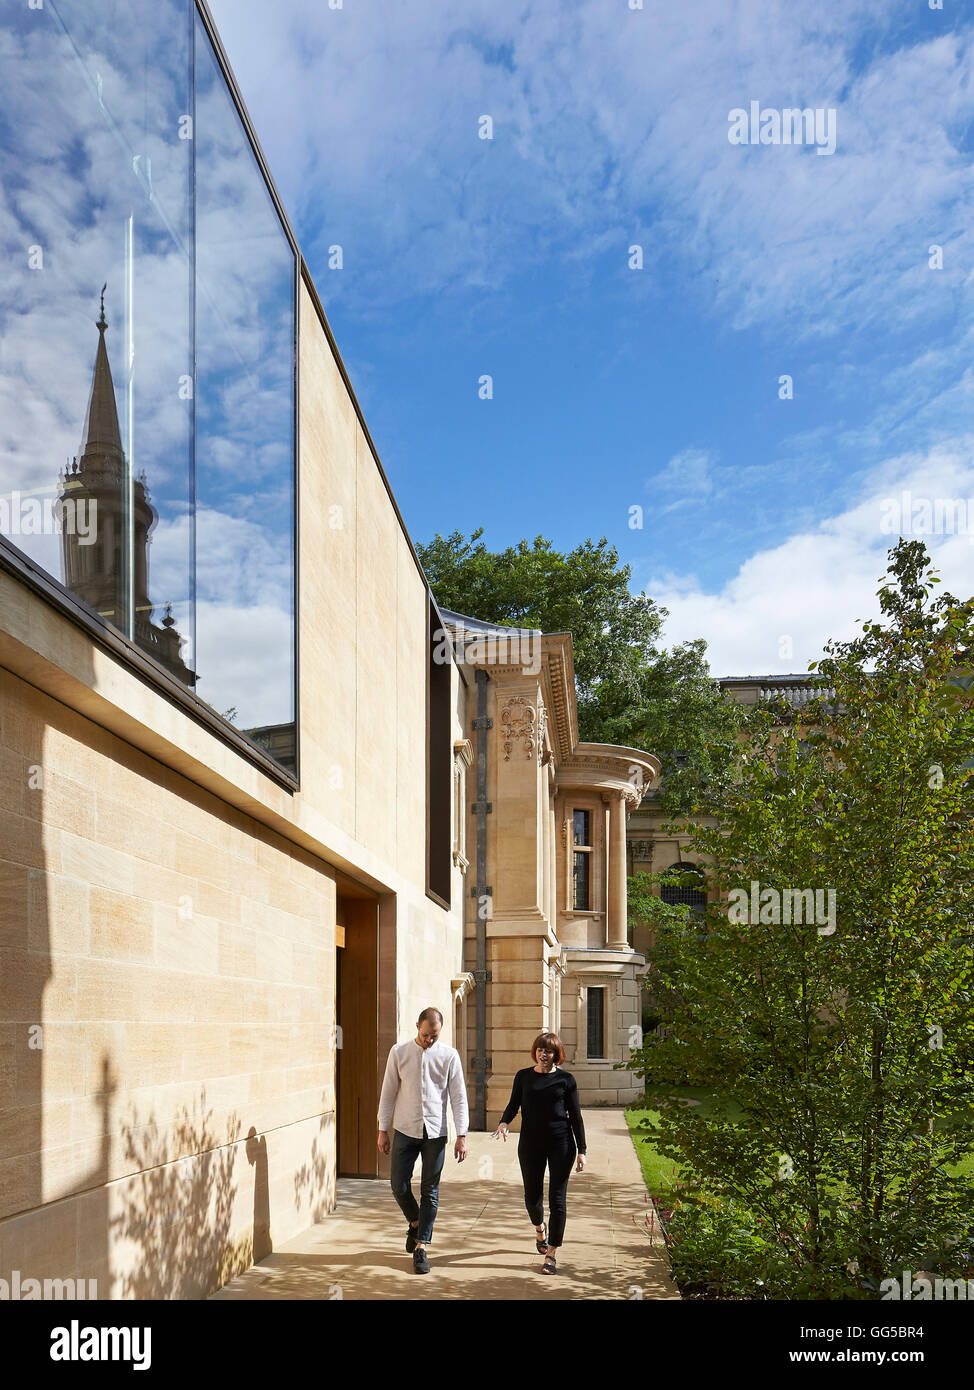 Façade en pierre extérieur le long de la perspective et de vitrage. Le jardin des capacités au Lincoln College, Oxford, Royaume-Uni. Architecte : Stanton Williams, 2015. Banque D'Images